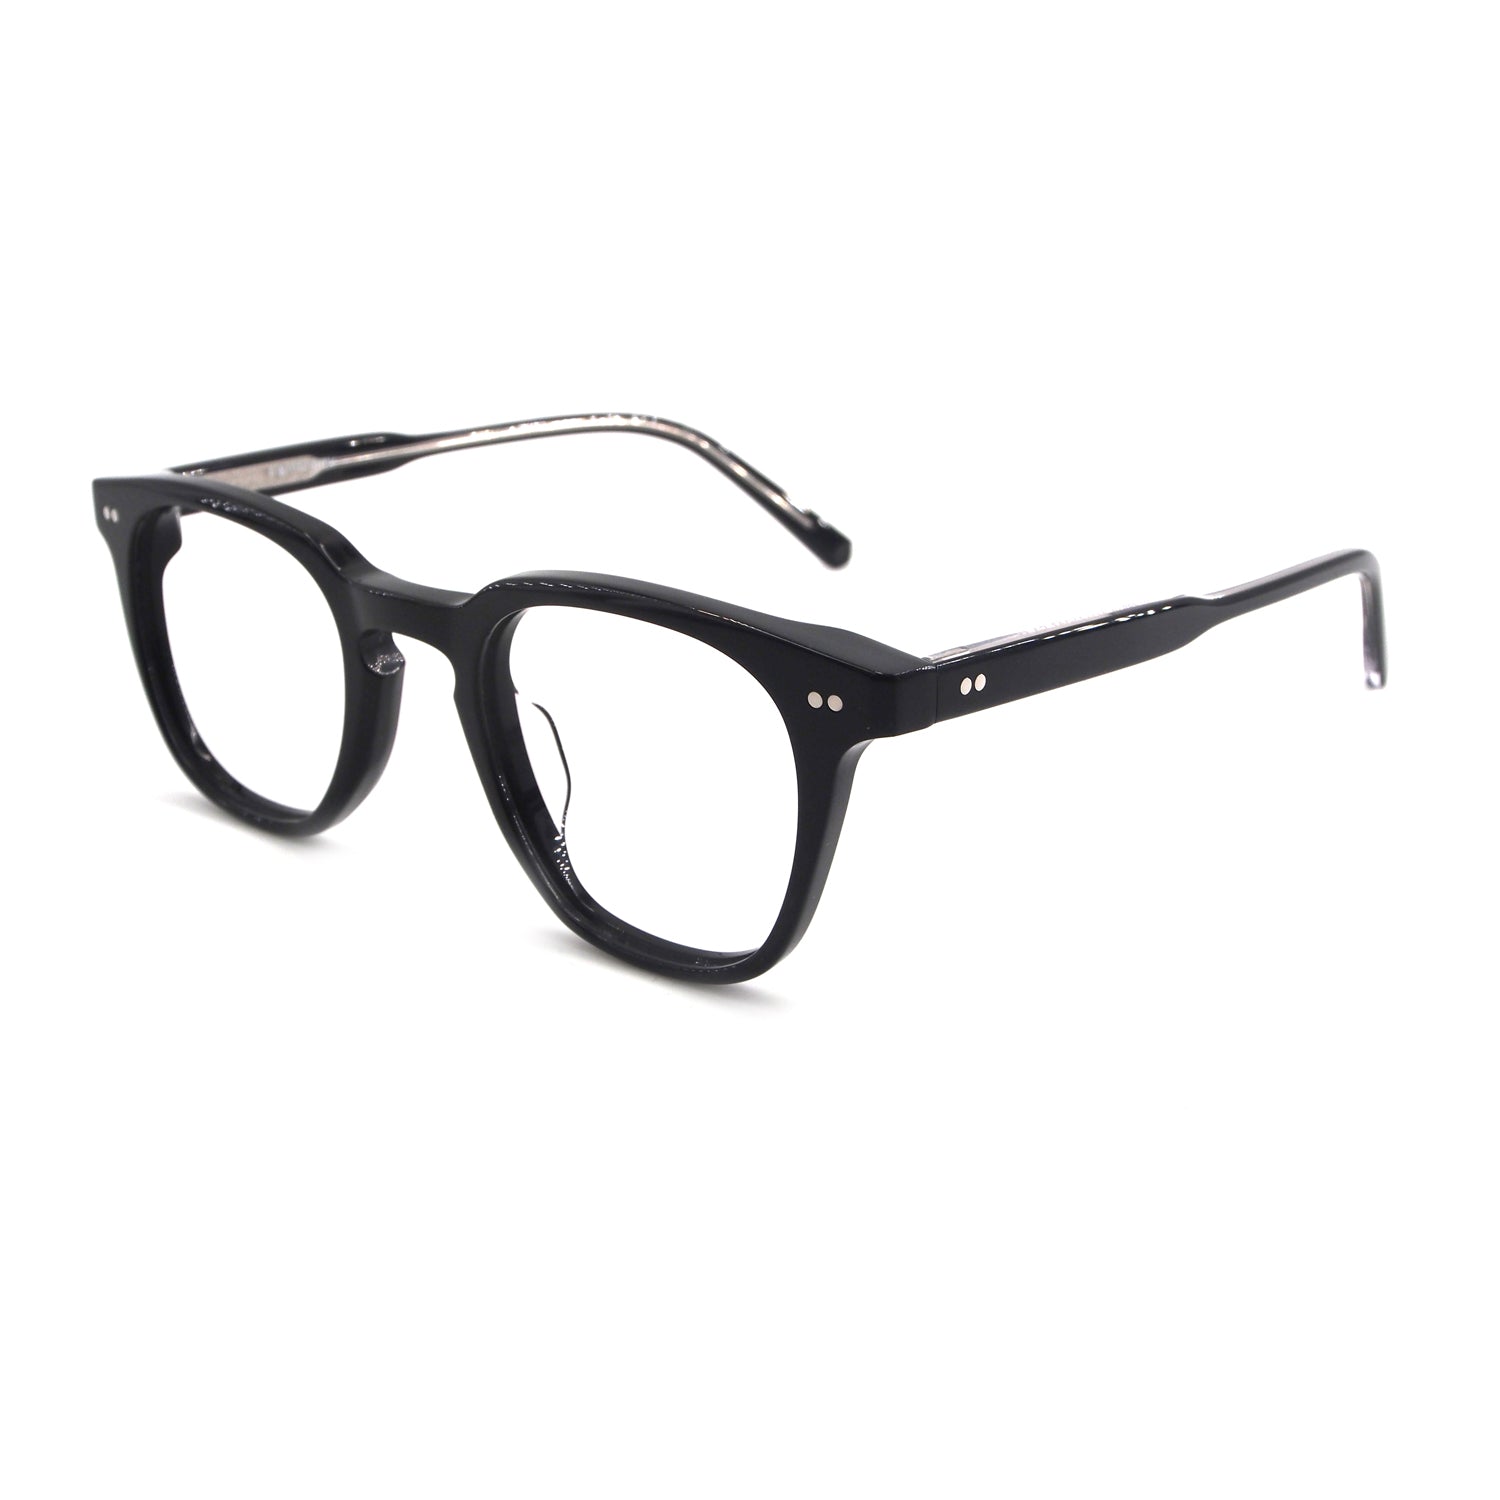 Kenta in Raven Black Eyeglasses - sightonomy